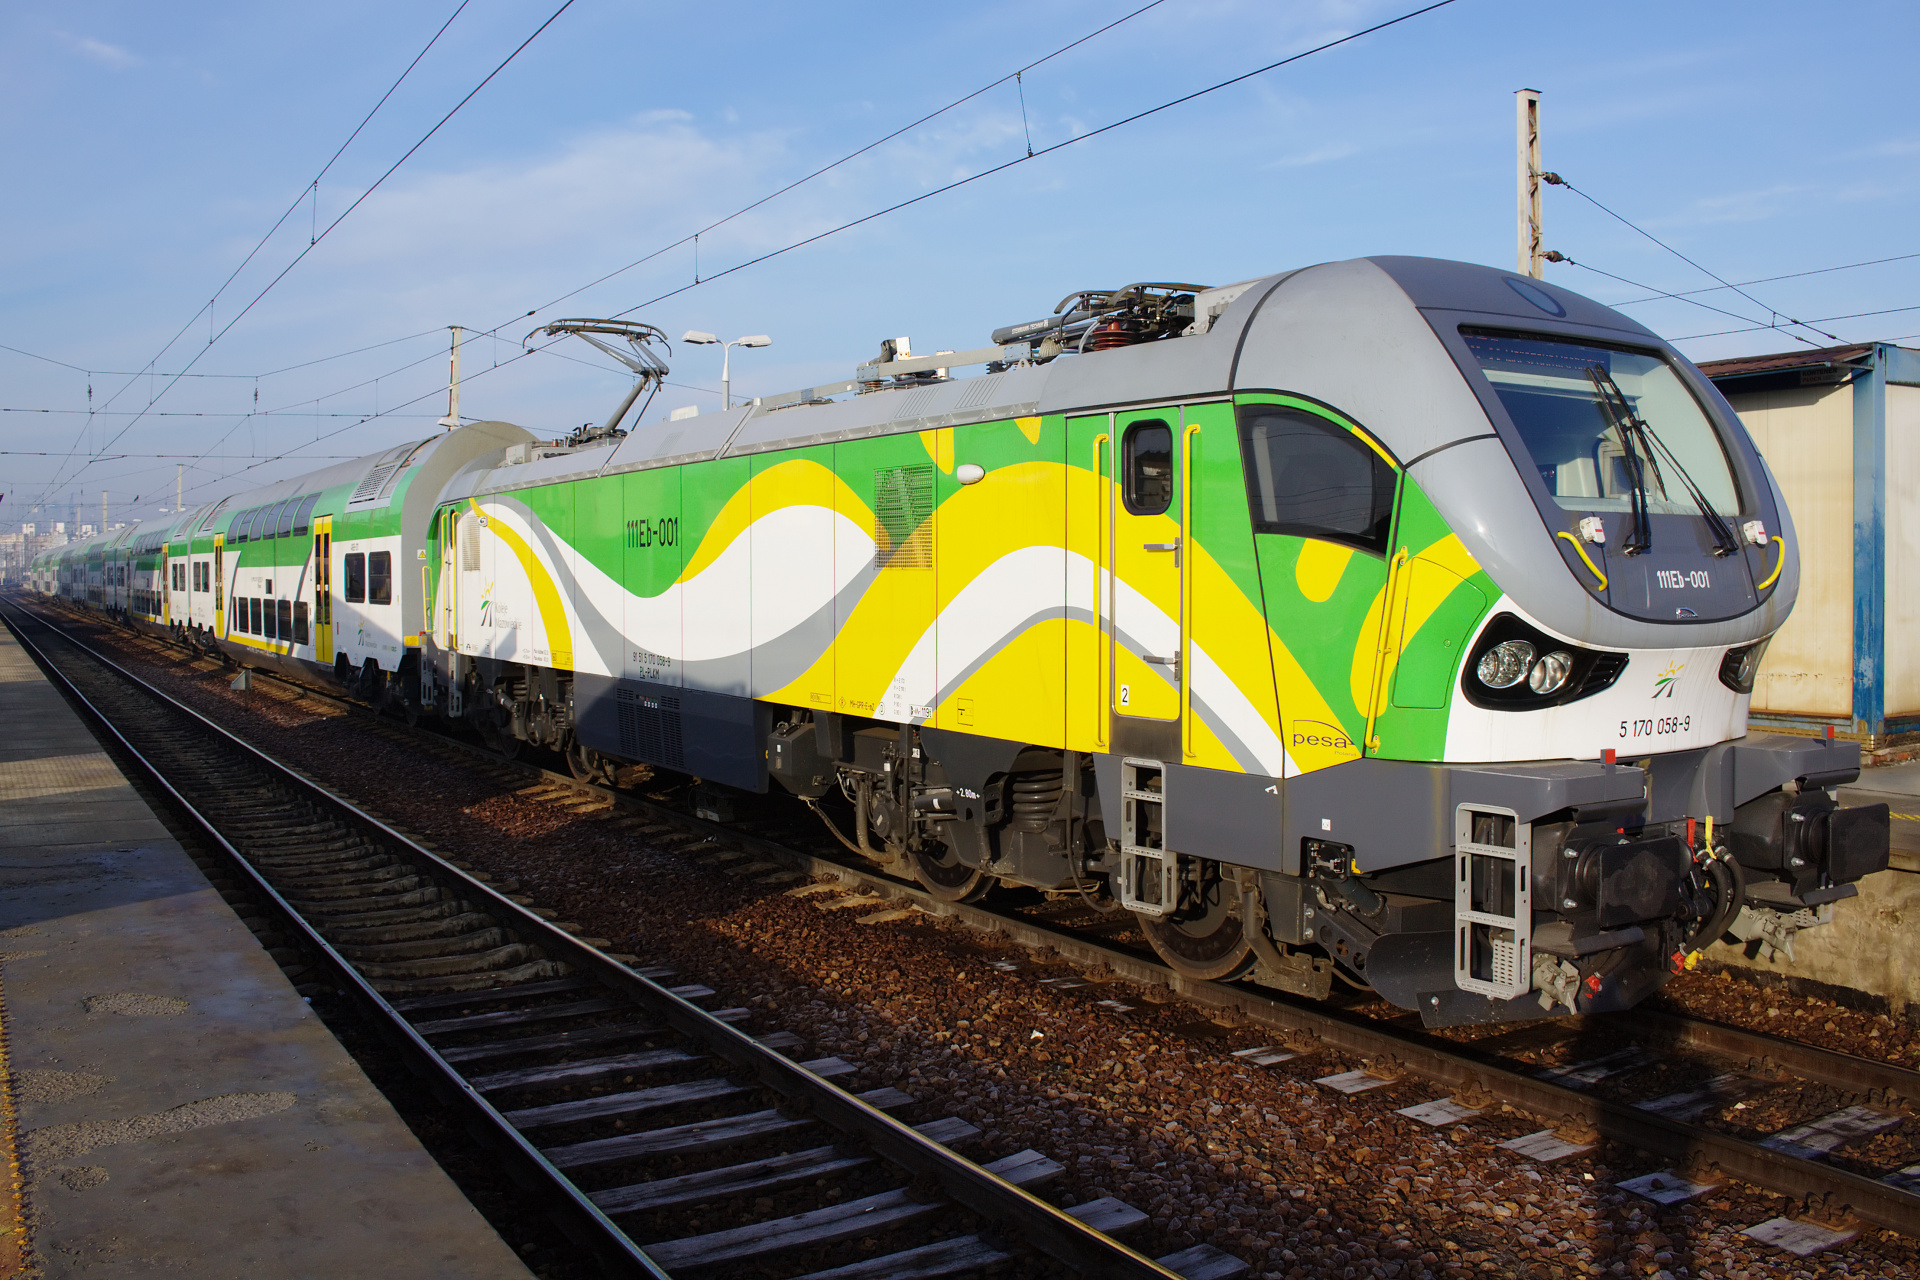 111Eb-001 (Pojazdy » Pociągi i lokomotywy » Pesa Gama)